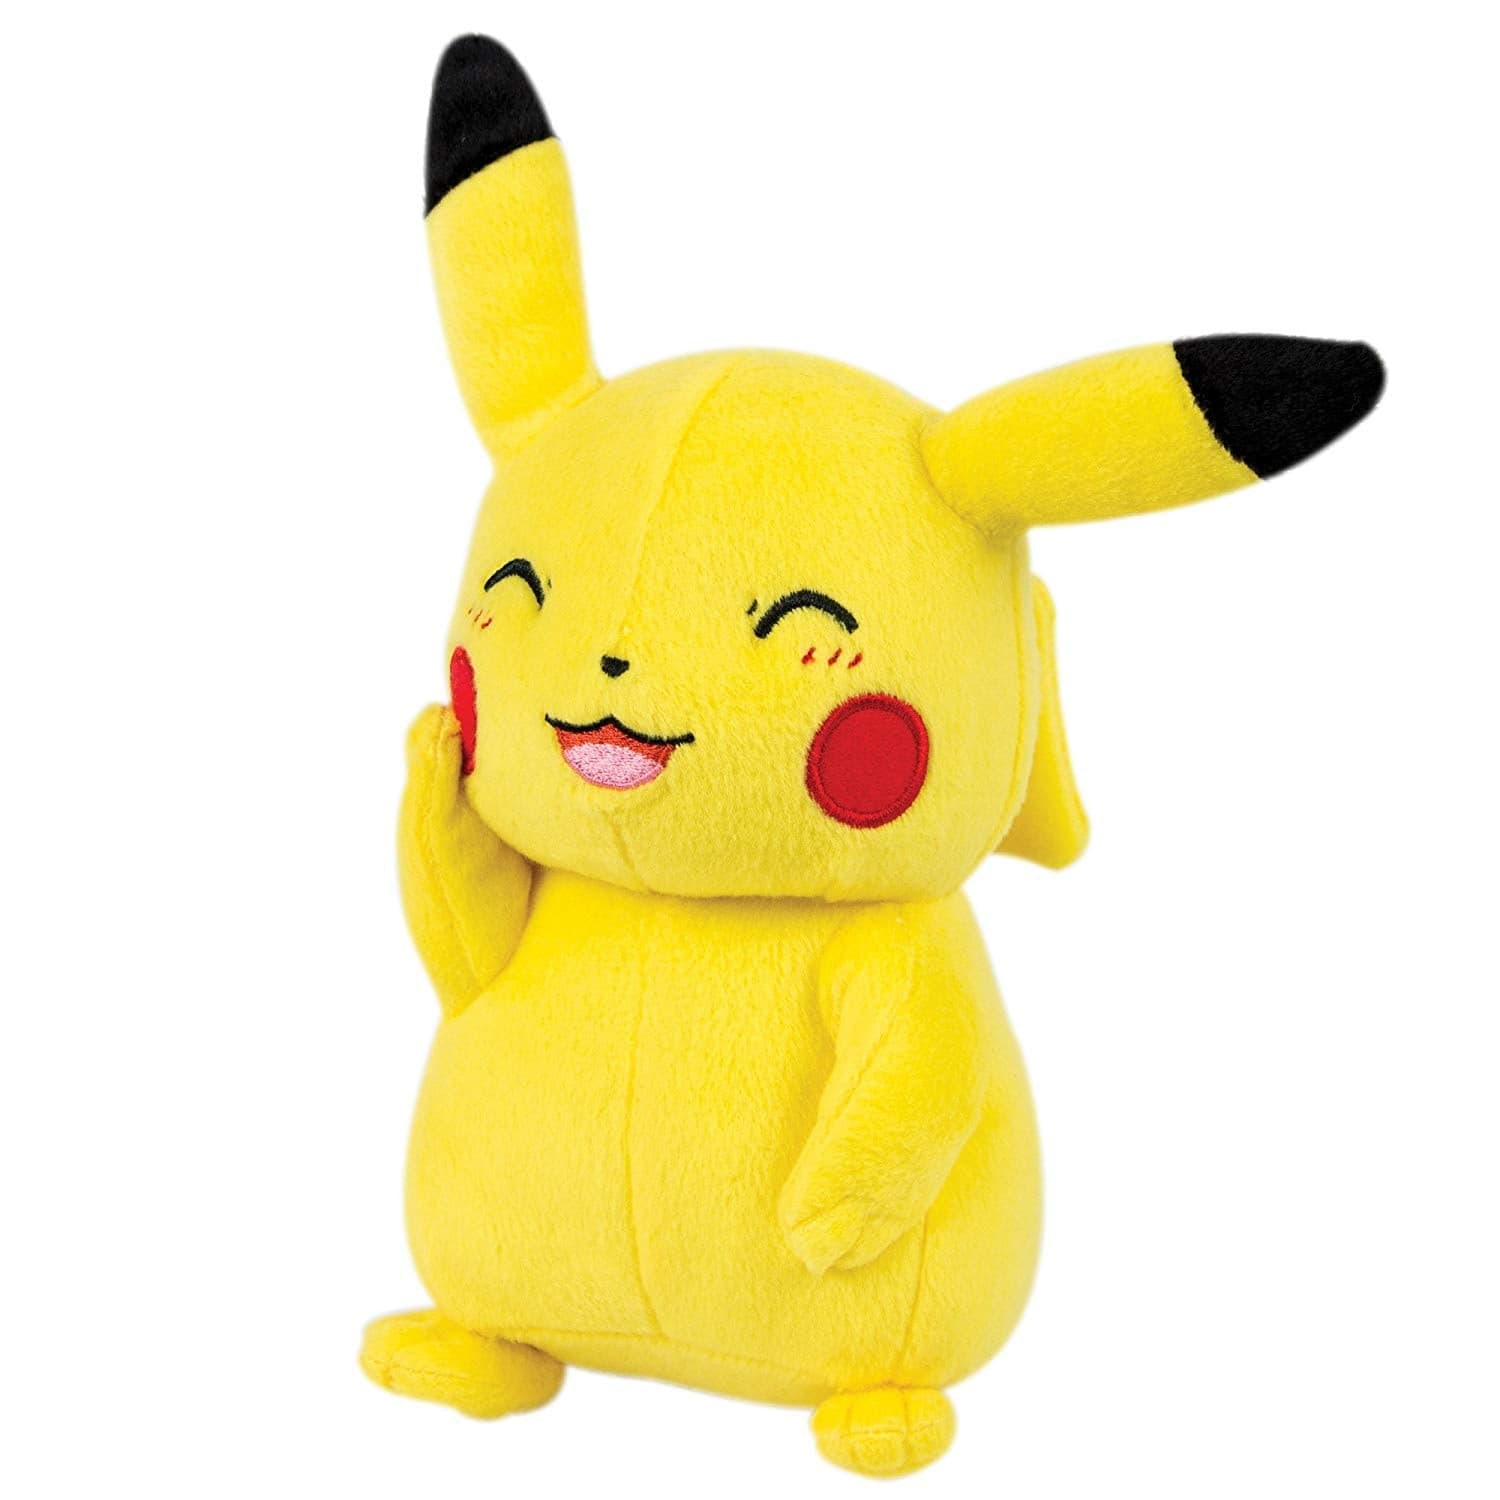 Pokemon - Pikachu - Plüschfigur - 30 cm - Karten-Kiosk.de